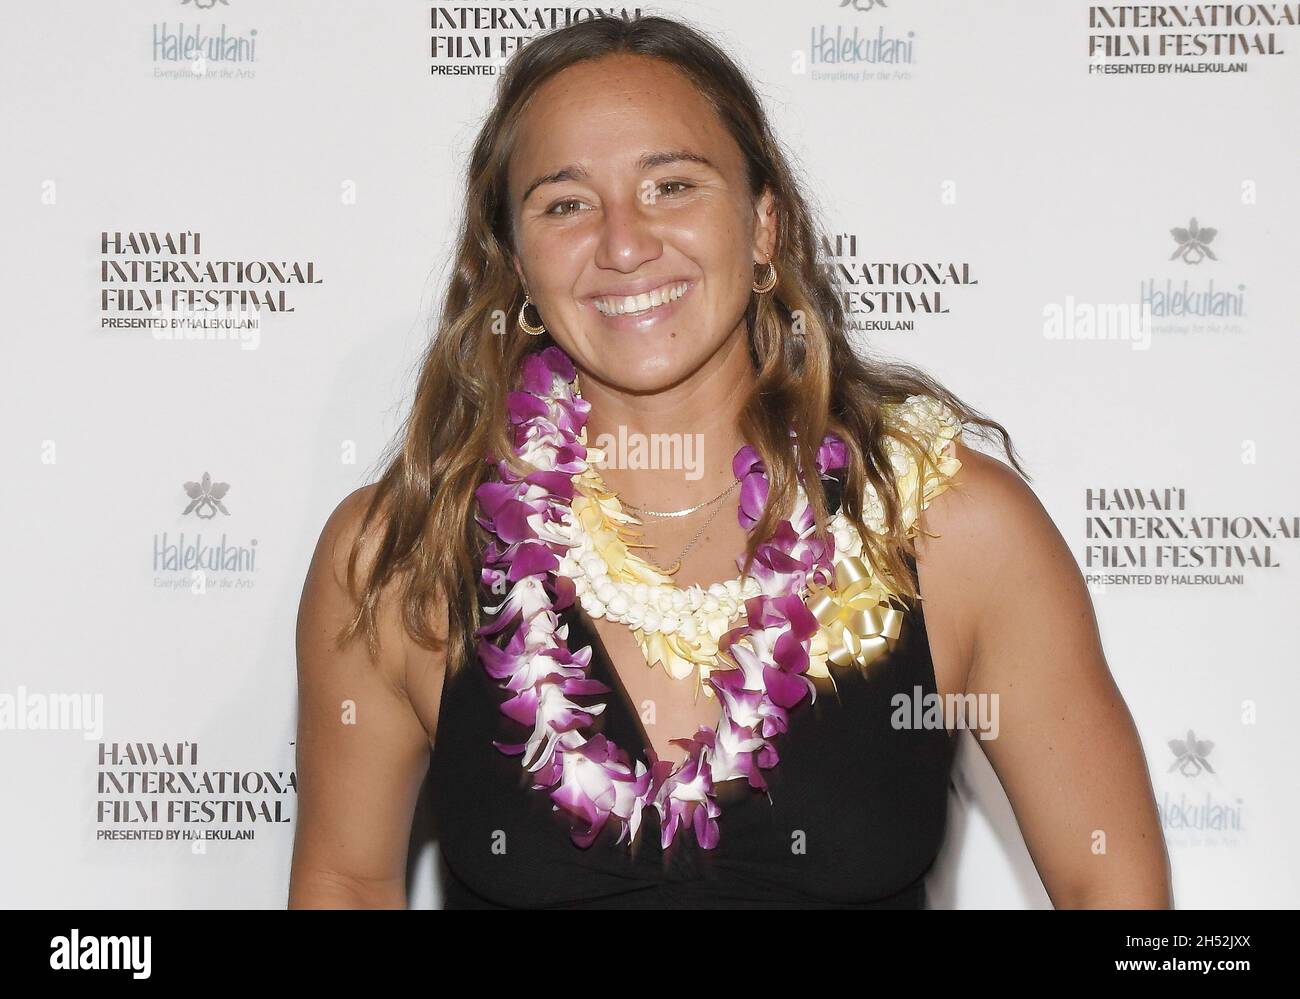 Le champion olympique surfer Carissa Moore arrive au 41e Festival du film international de Hawai'i - PROJECTION de la première mondiale DE WATERMAN qui a eu lieu au Bishop Museum à Honolulu, HI, le vendredi 5 novembre 2021.(Photo de la Sathanlee B. Mirador/Sipa USA) Banque D'Images